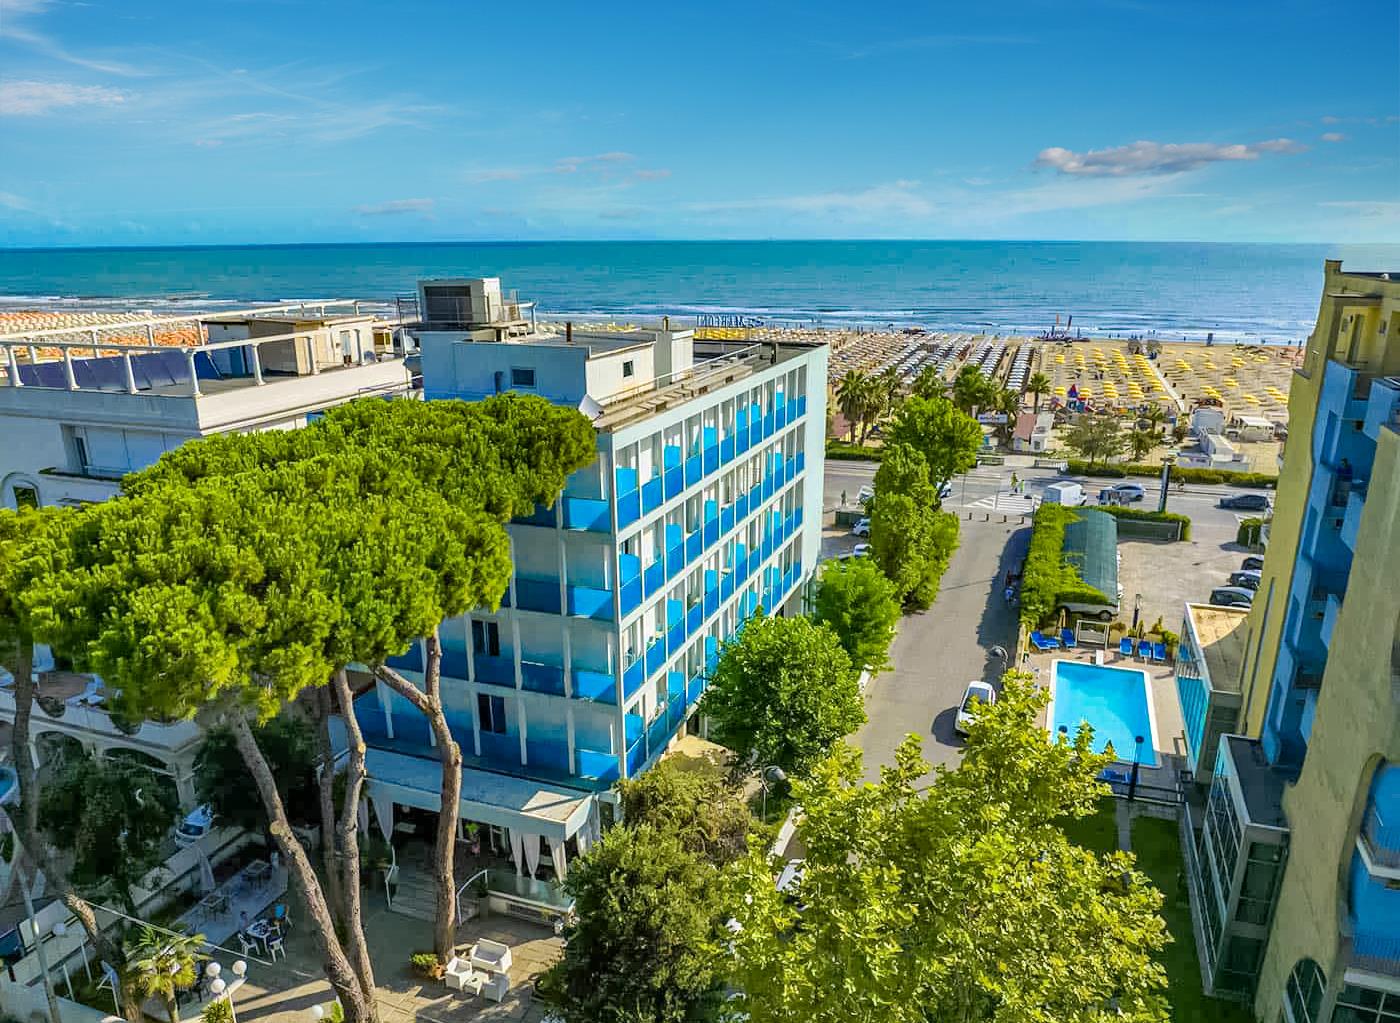 Hotel Spiaggia Marconi***